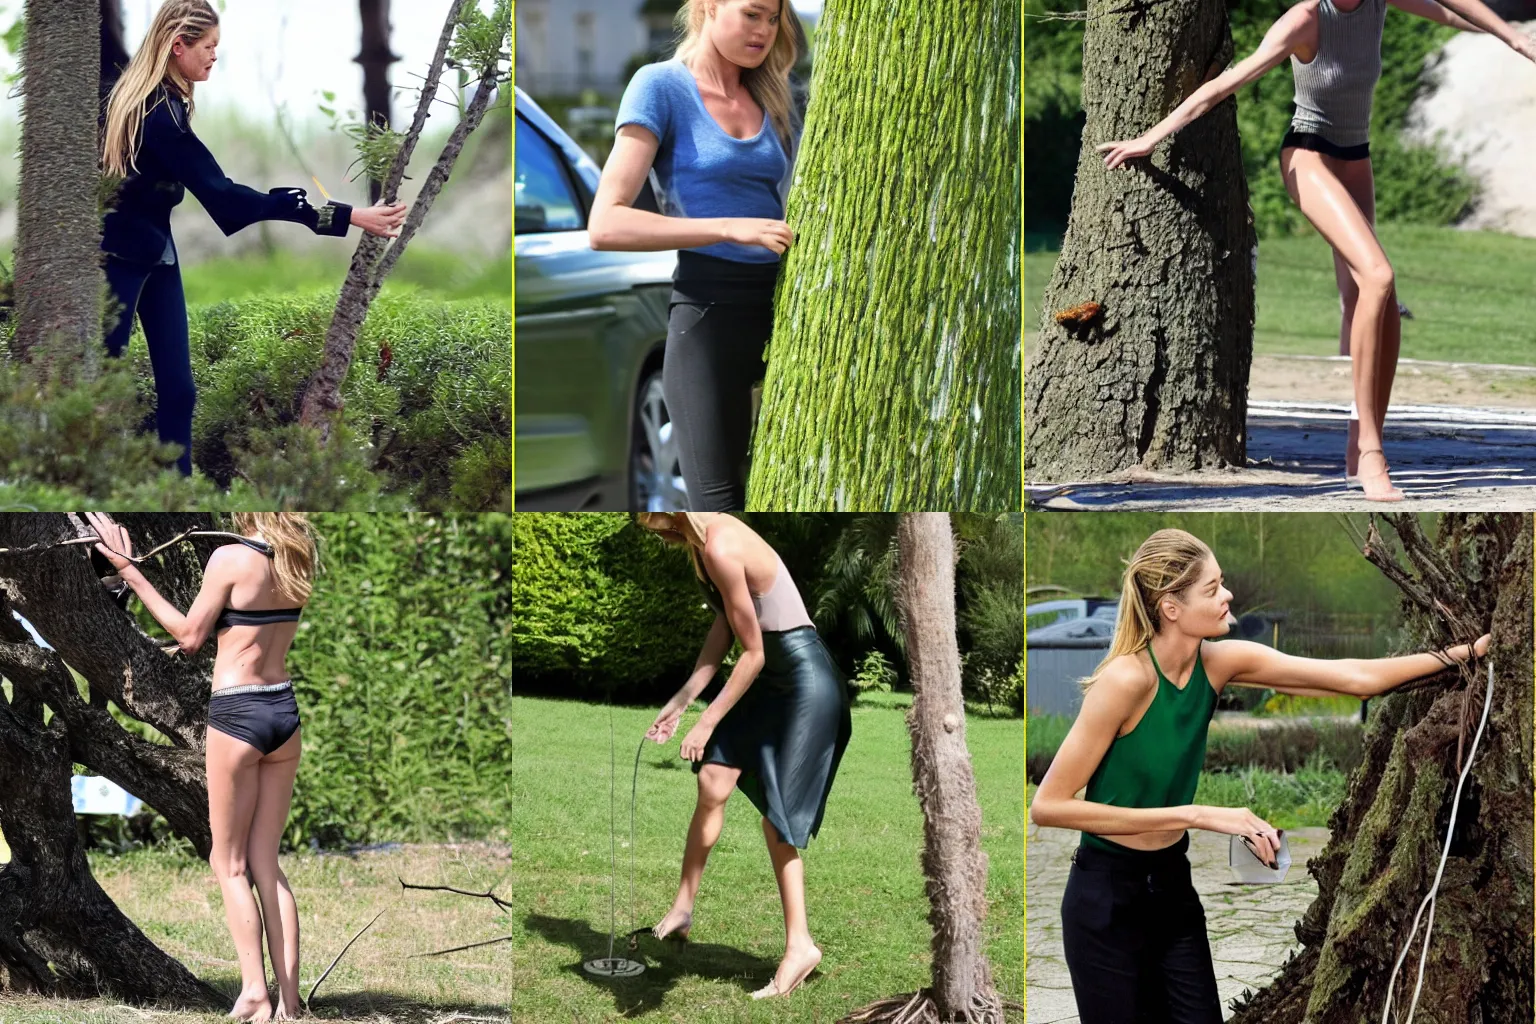 Prompt: doutzen kroes pulling a tree